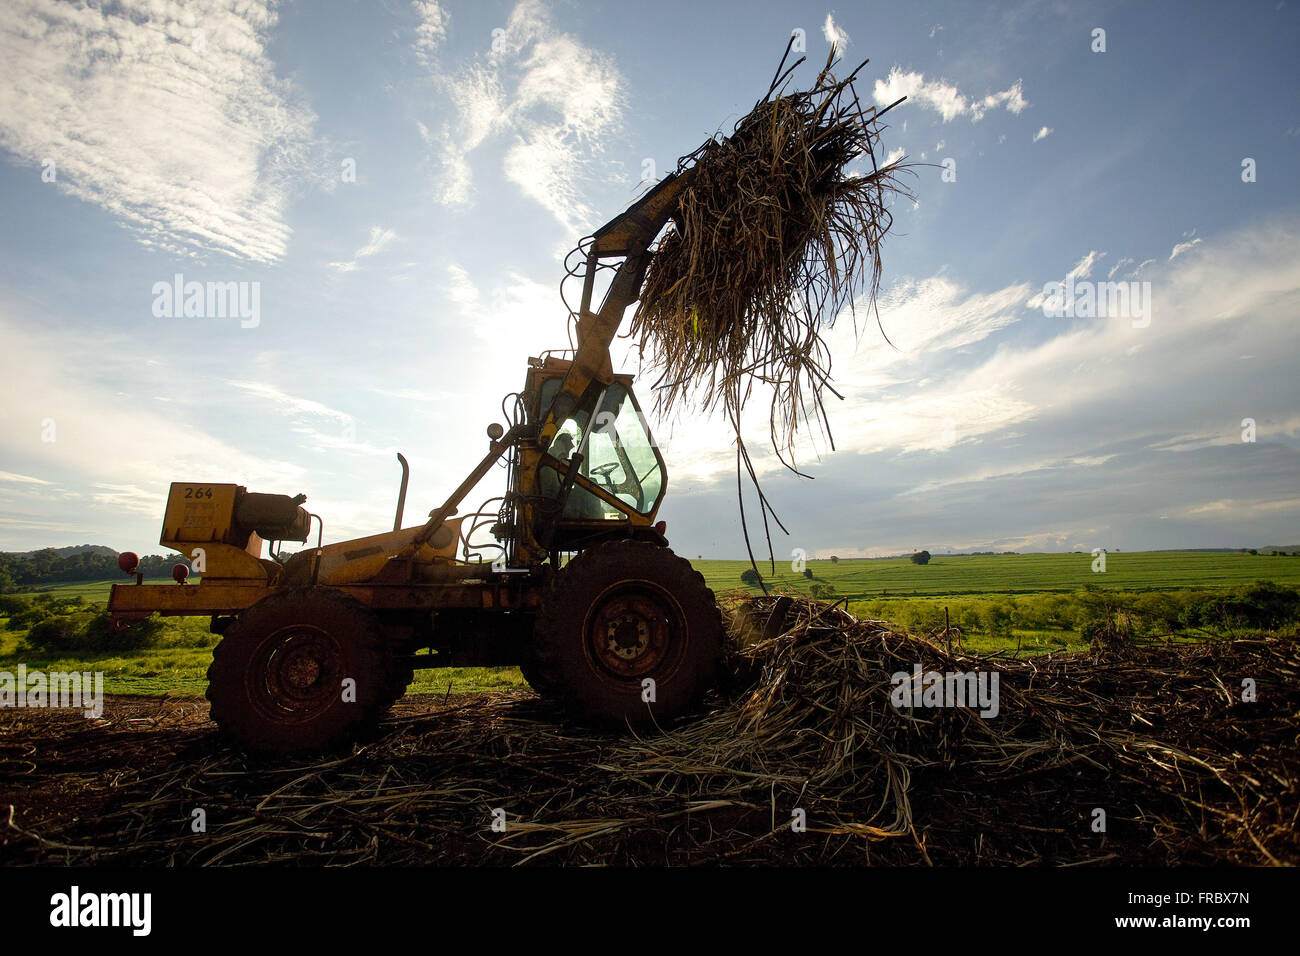 La collecte du tracteur de la canne à sucre après la récolte manuelle dans la campagne Banque D'Images